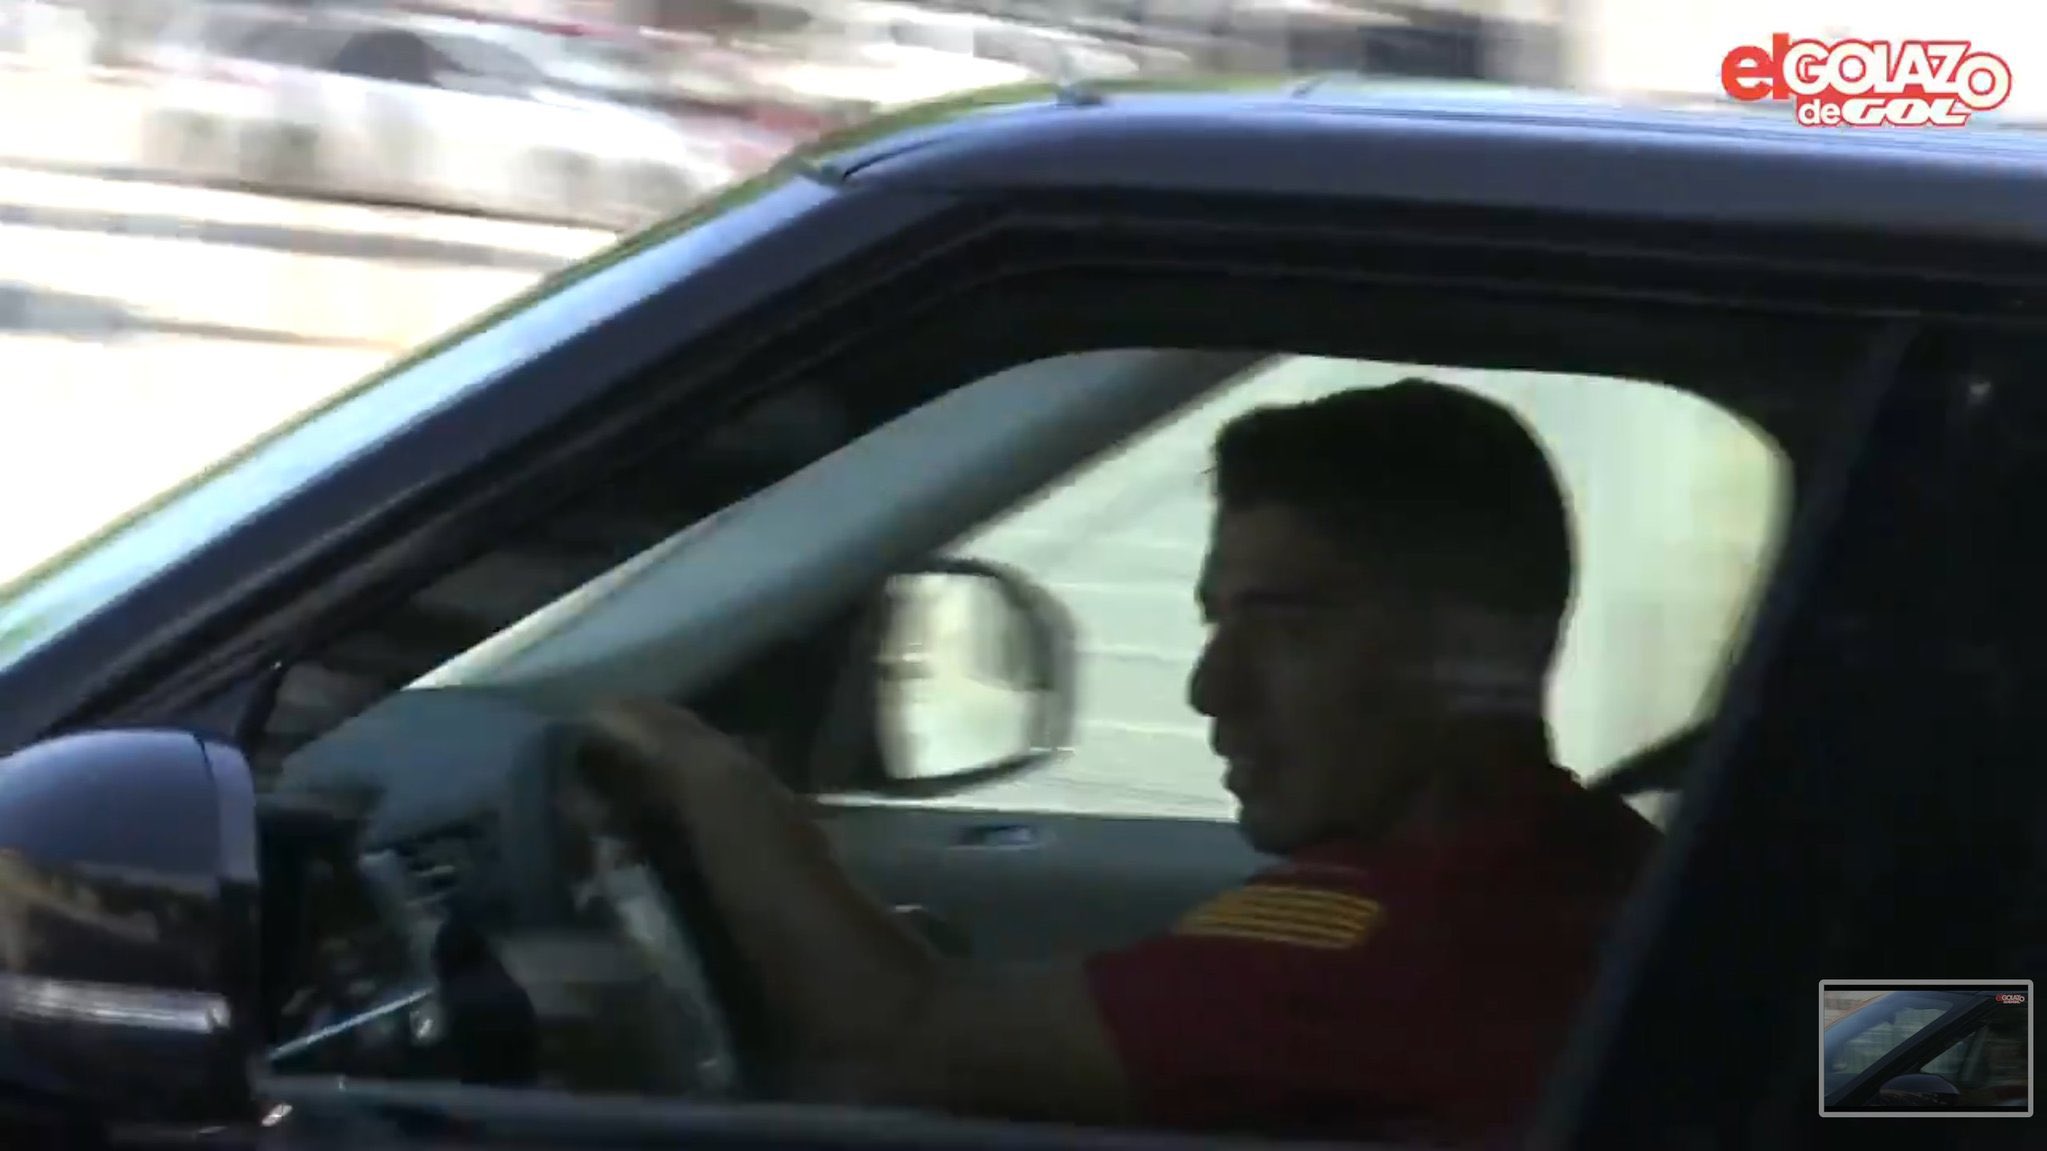 Barca : Luis Suarez a fait ses adieux à ses coéquipiers en larmes (vidéo)